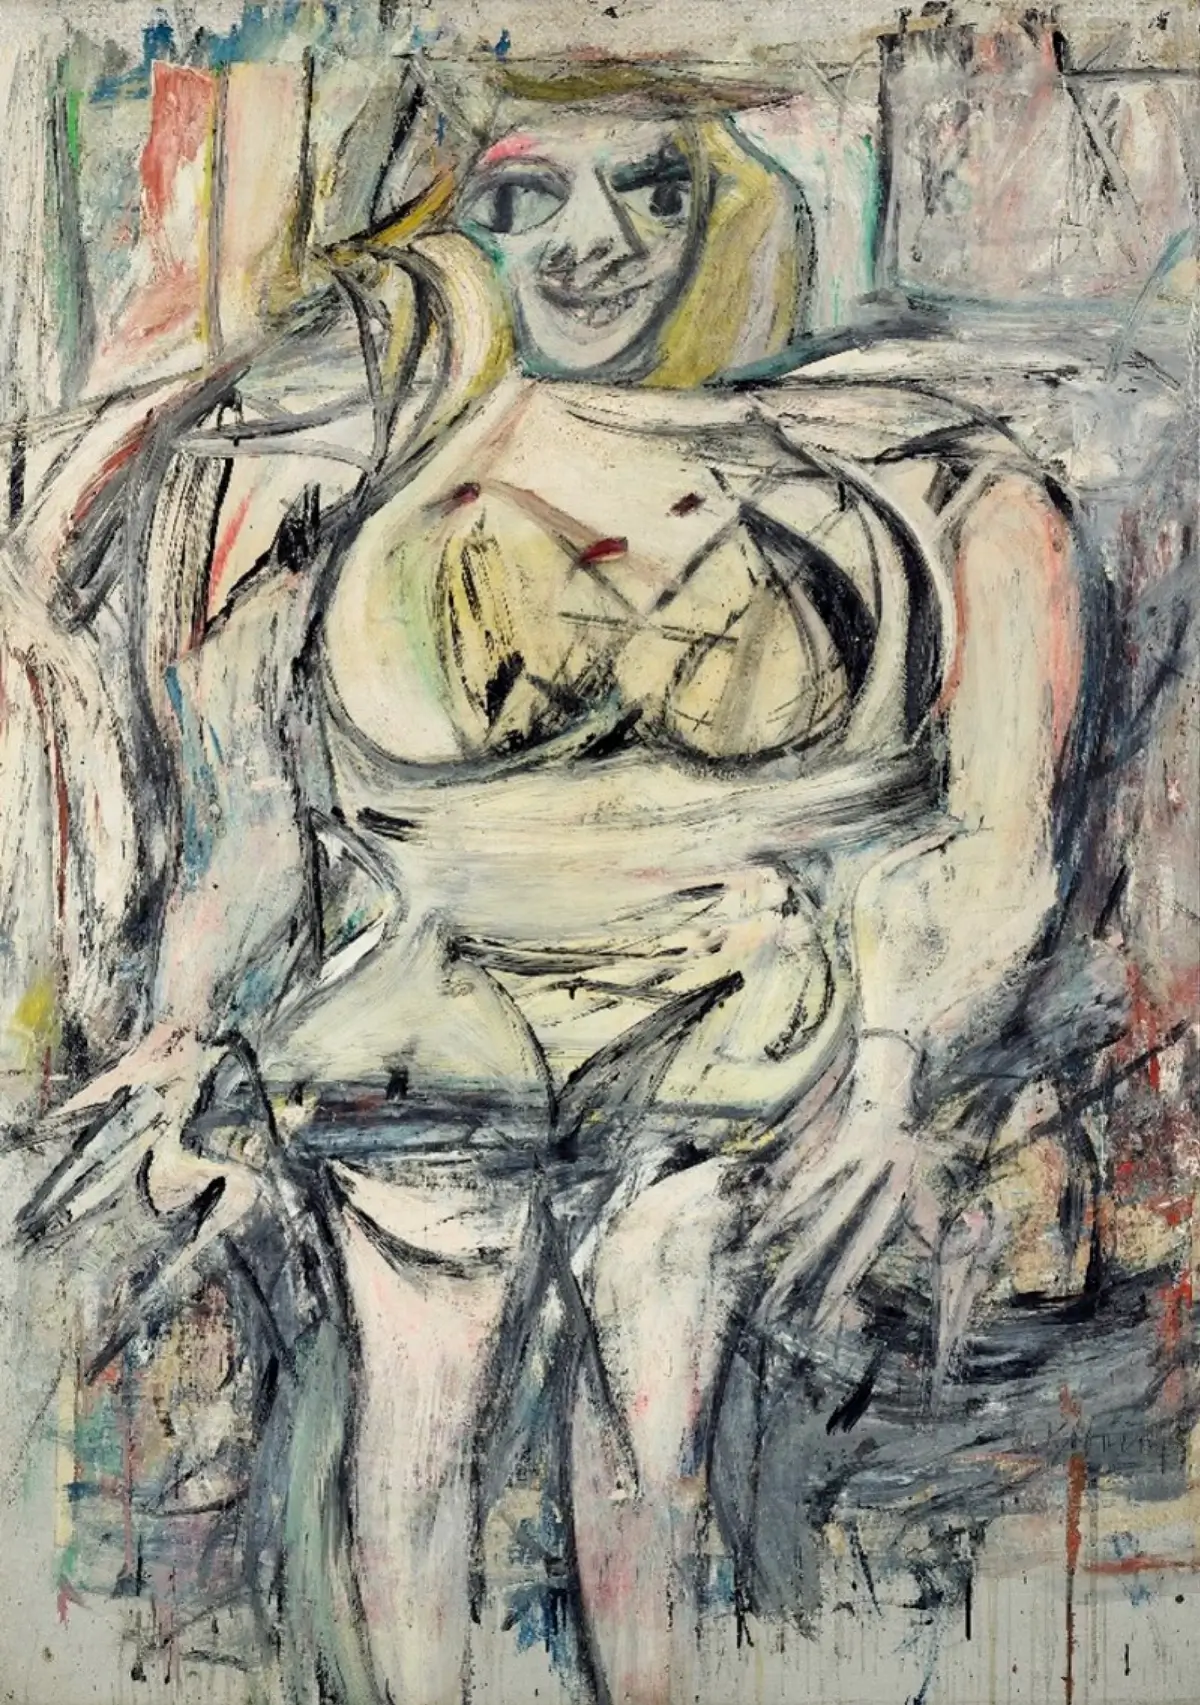 Willem de Kooning's "Woman III" (1951-53)